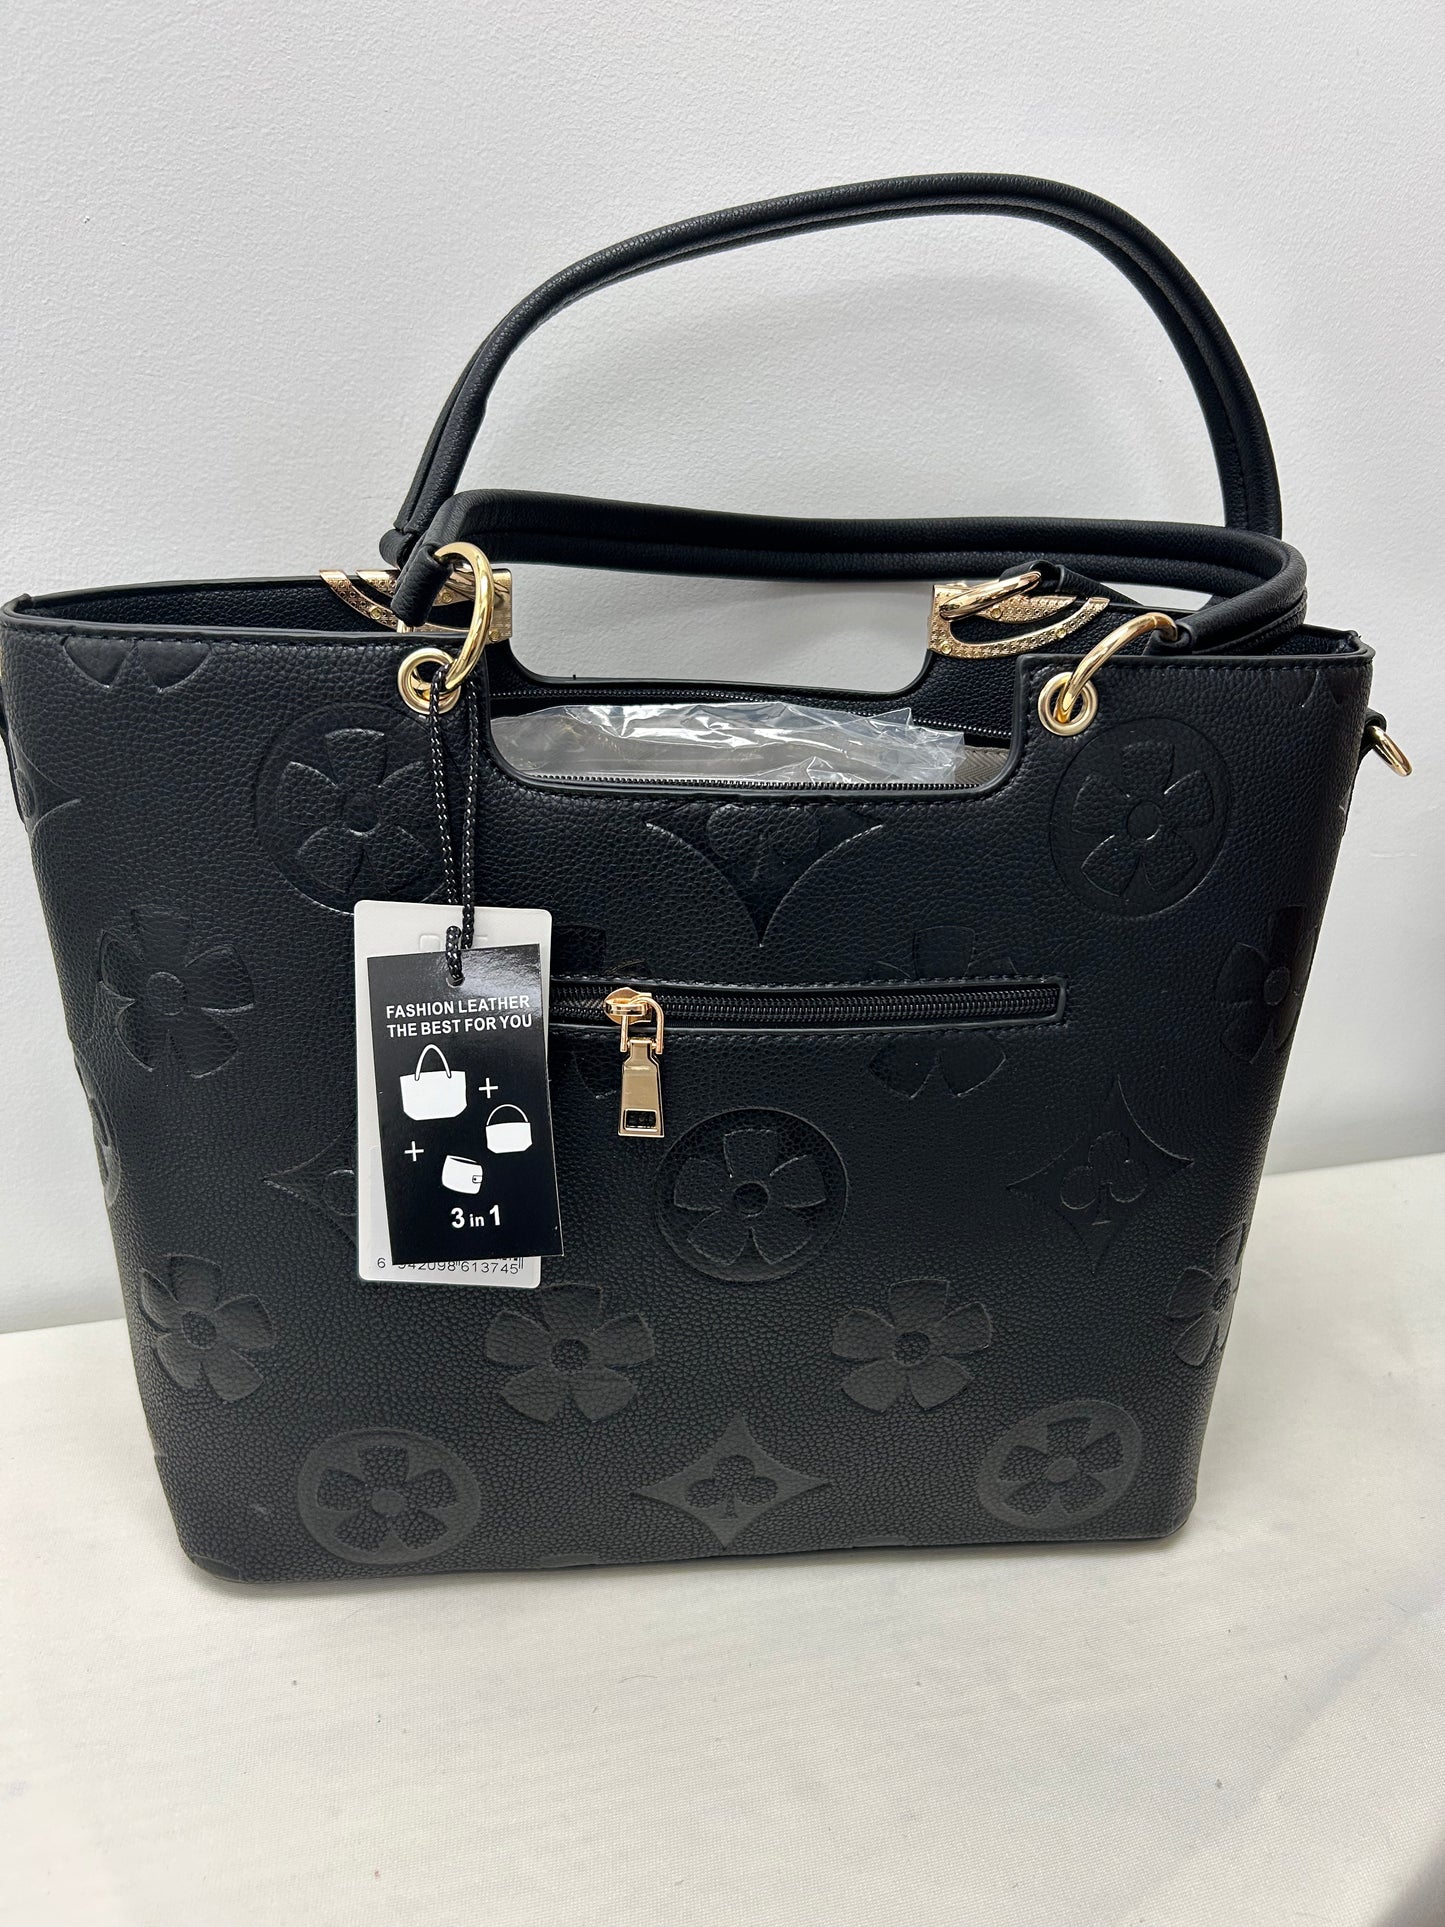 Matching LV inspired handbag and wallet